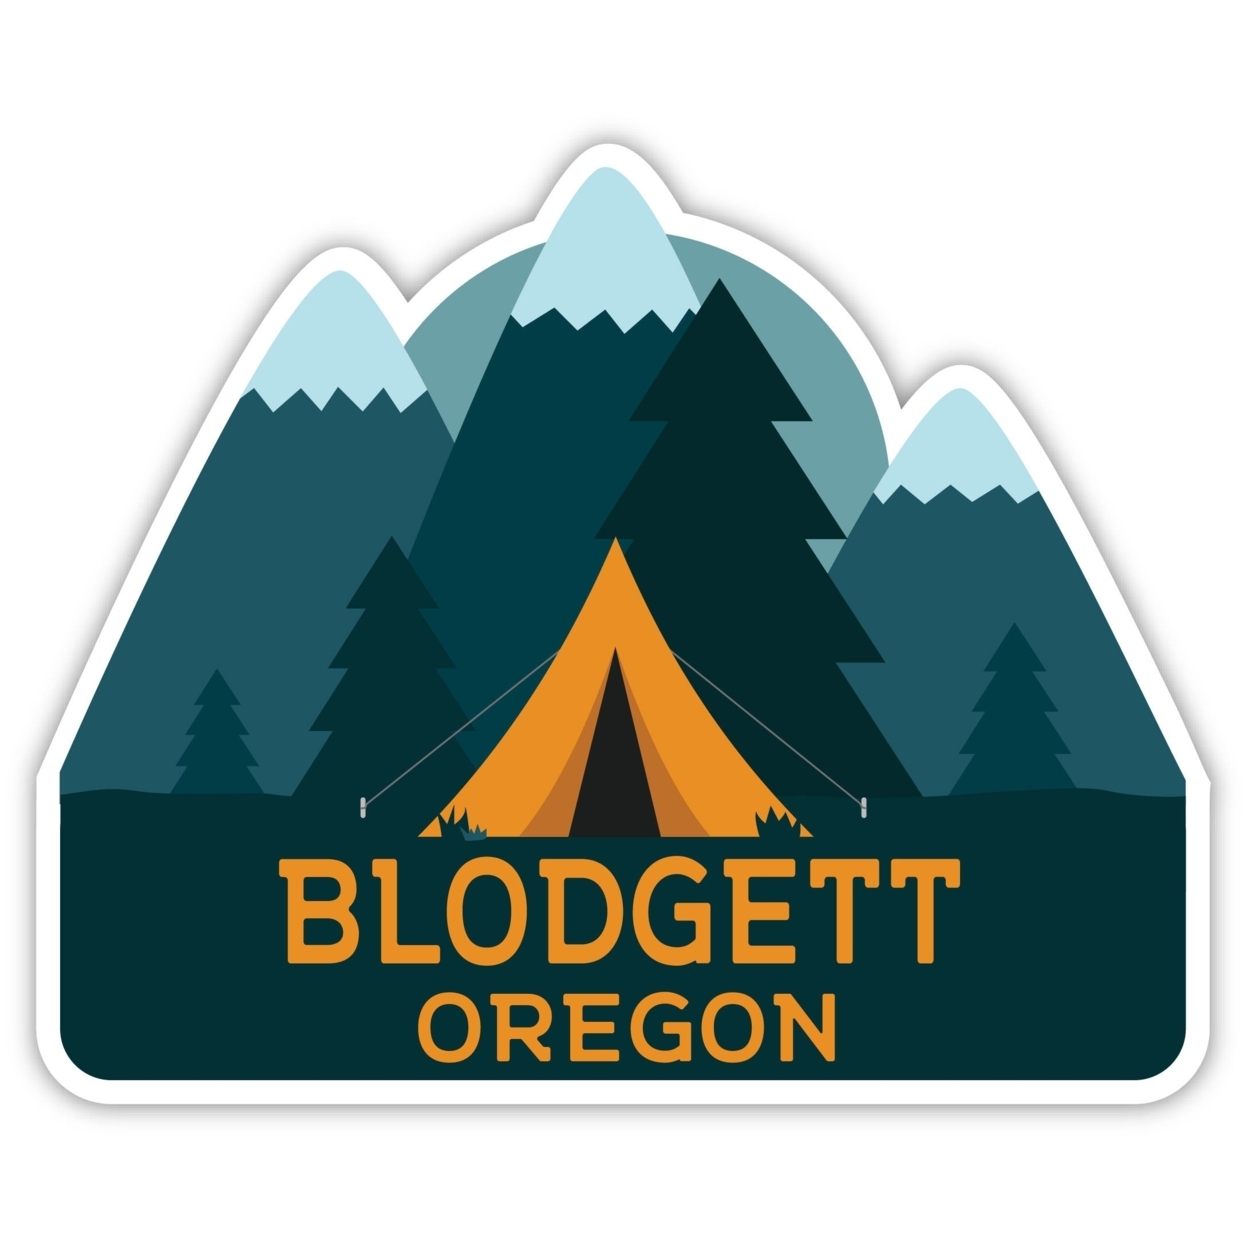 Blodgett Oregon Souvenir Decorative Stickers (Choose Theme And Size) - Single Unit, 2-Inch, Tent